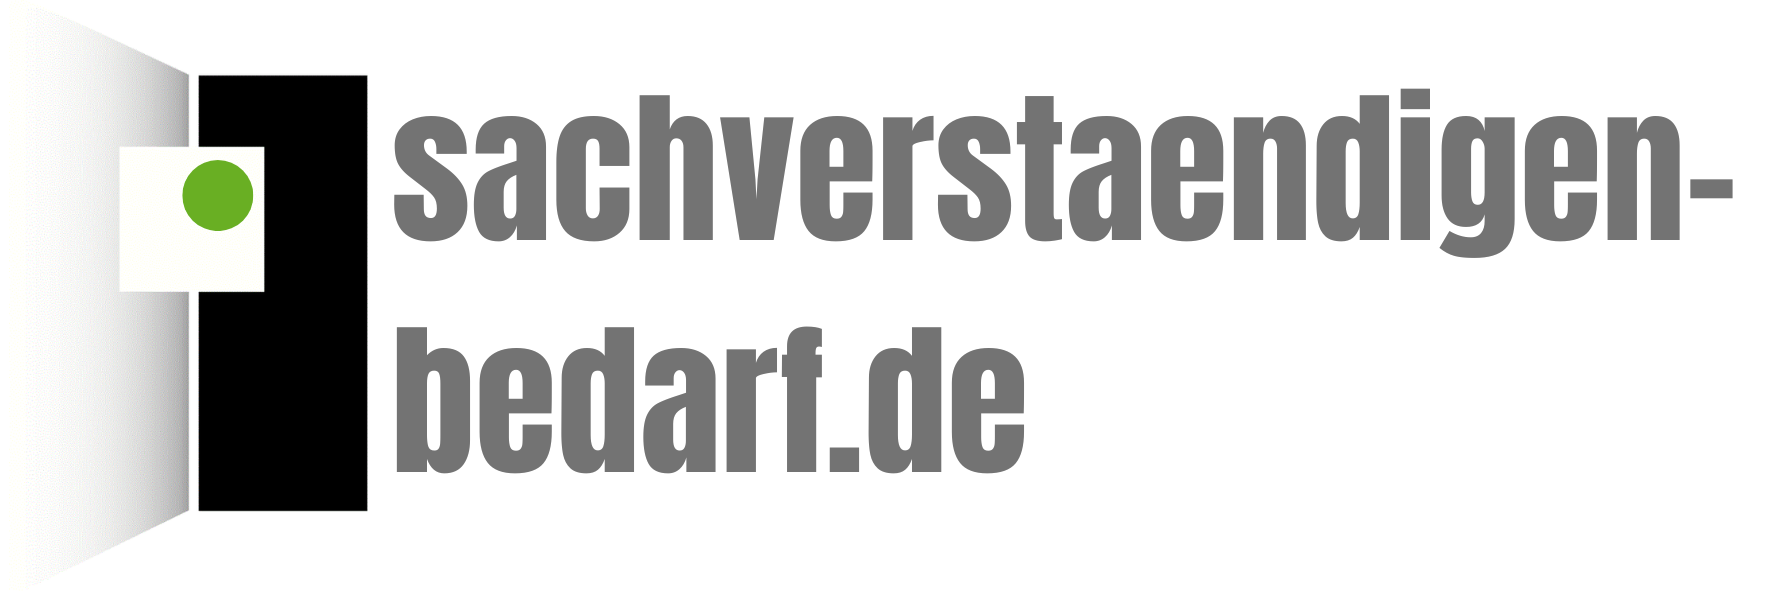 sachverstaendigen-bedarf.de-Logo